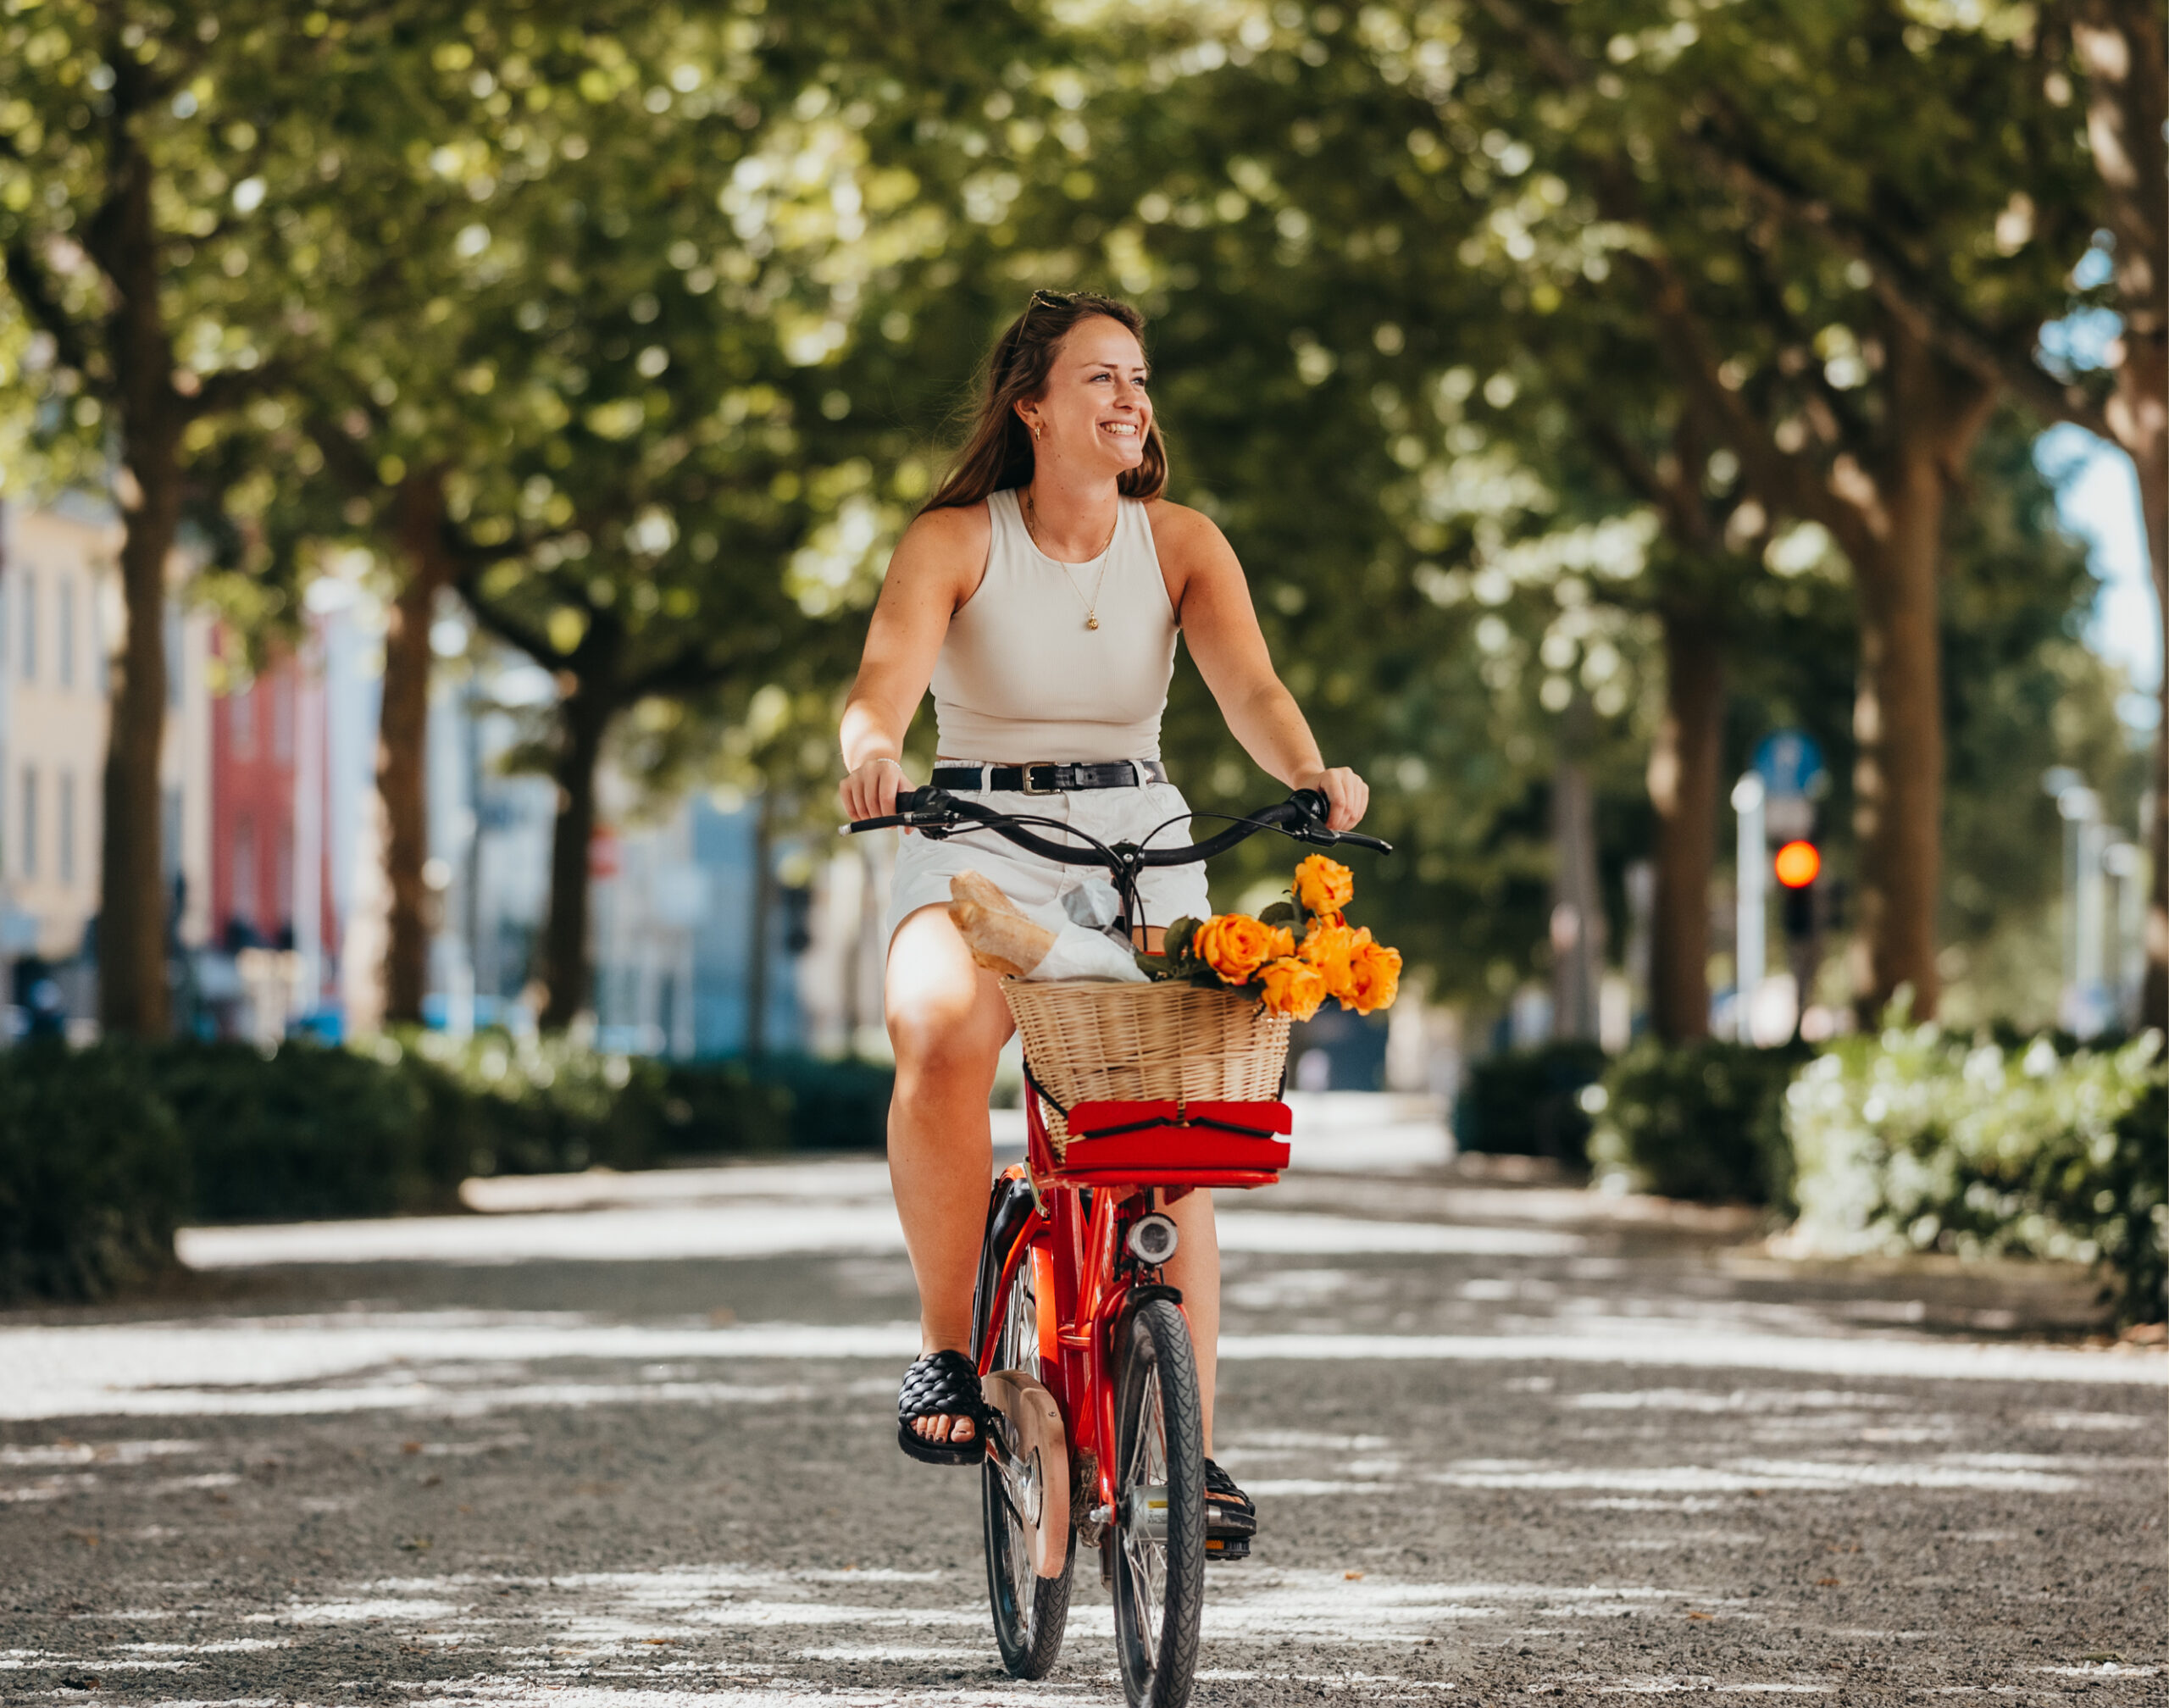 Frau auf einem Fahrrad